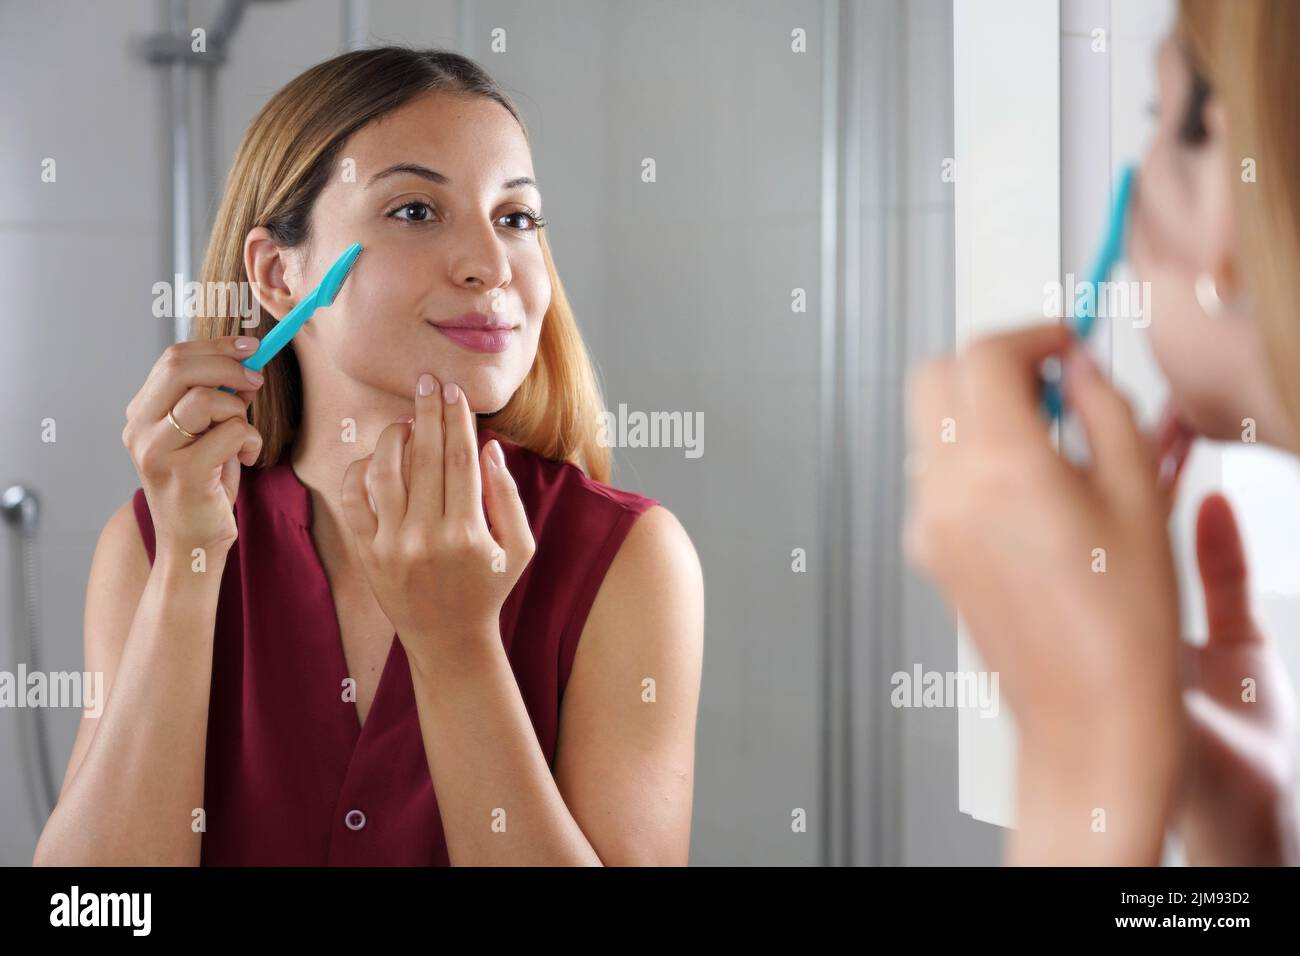 Épilation du visage. Une fille brésilienne se raser le visage par un rasoir  à la maison. Belle jeune femme utilisant un rasoir dans la salle de bains  Photo Stock - Alamy